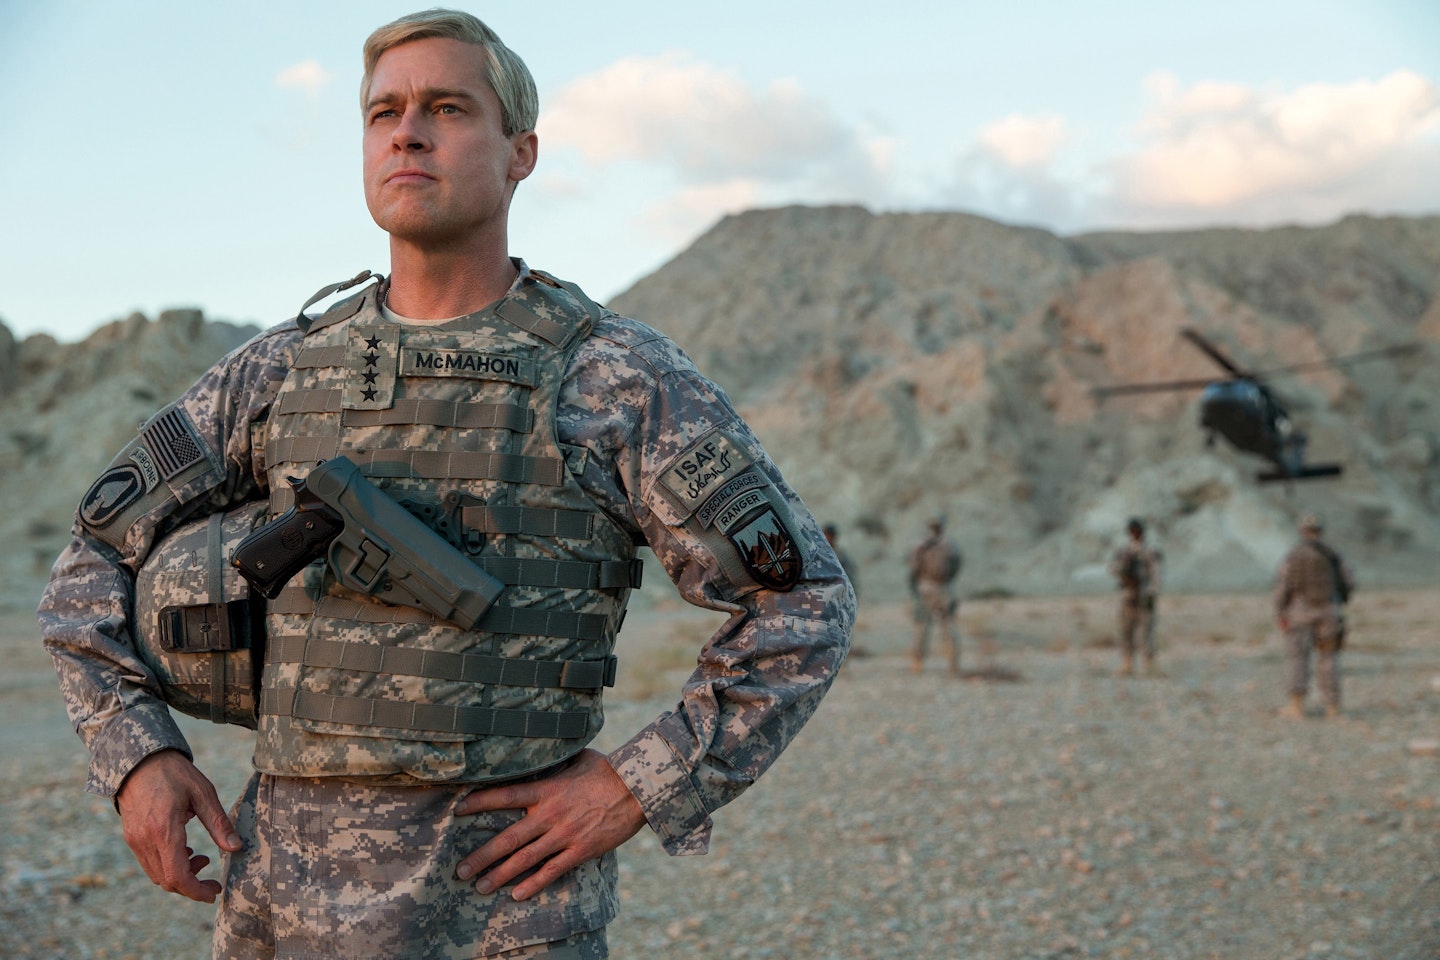 Brad Pitt in War Machine